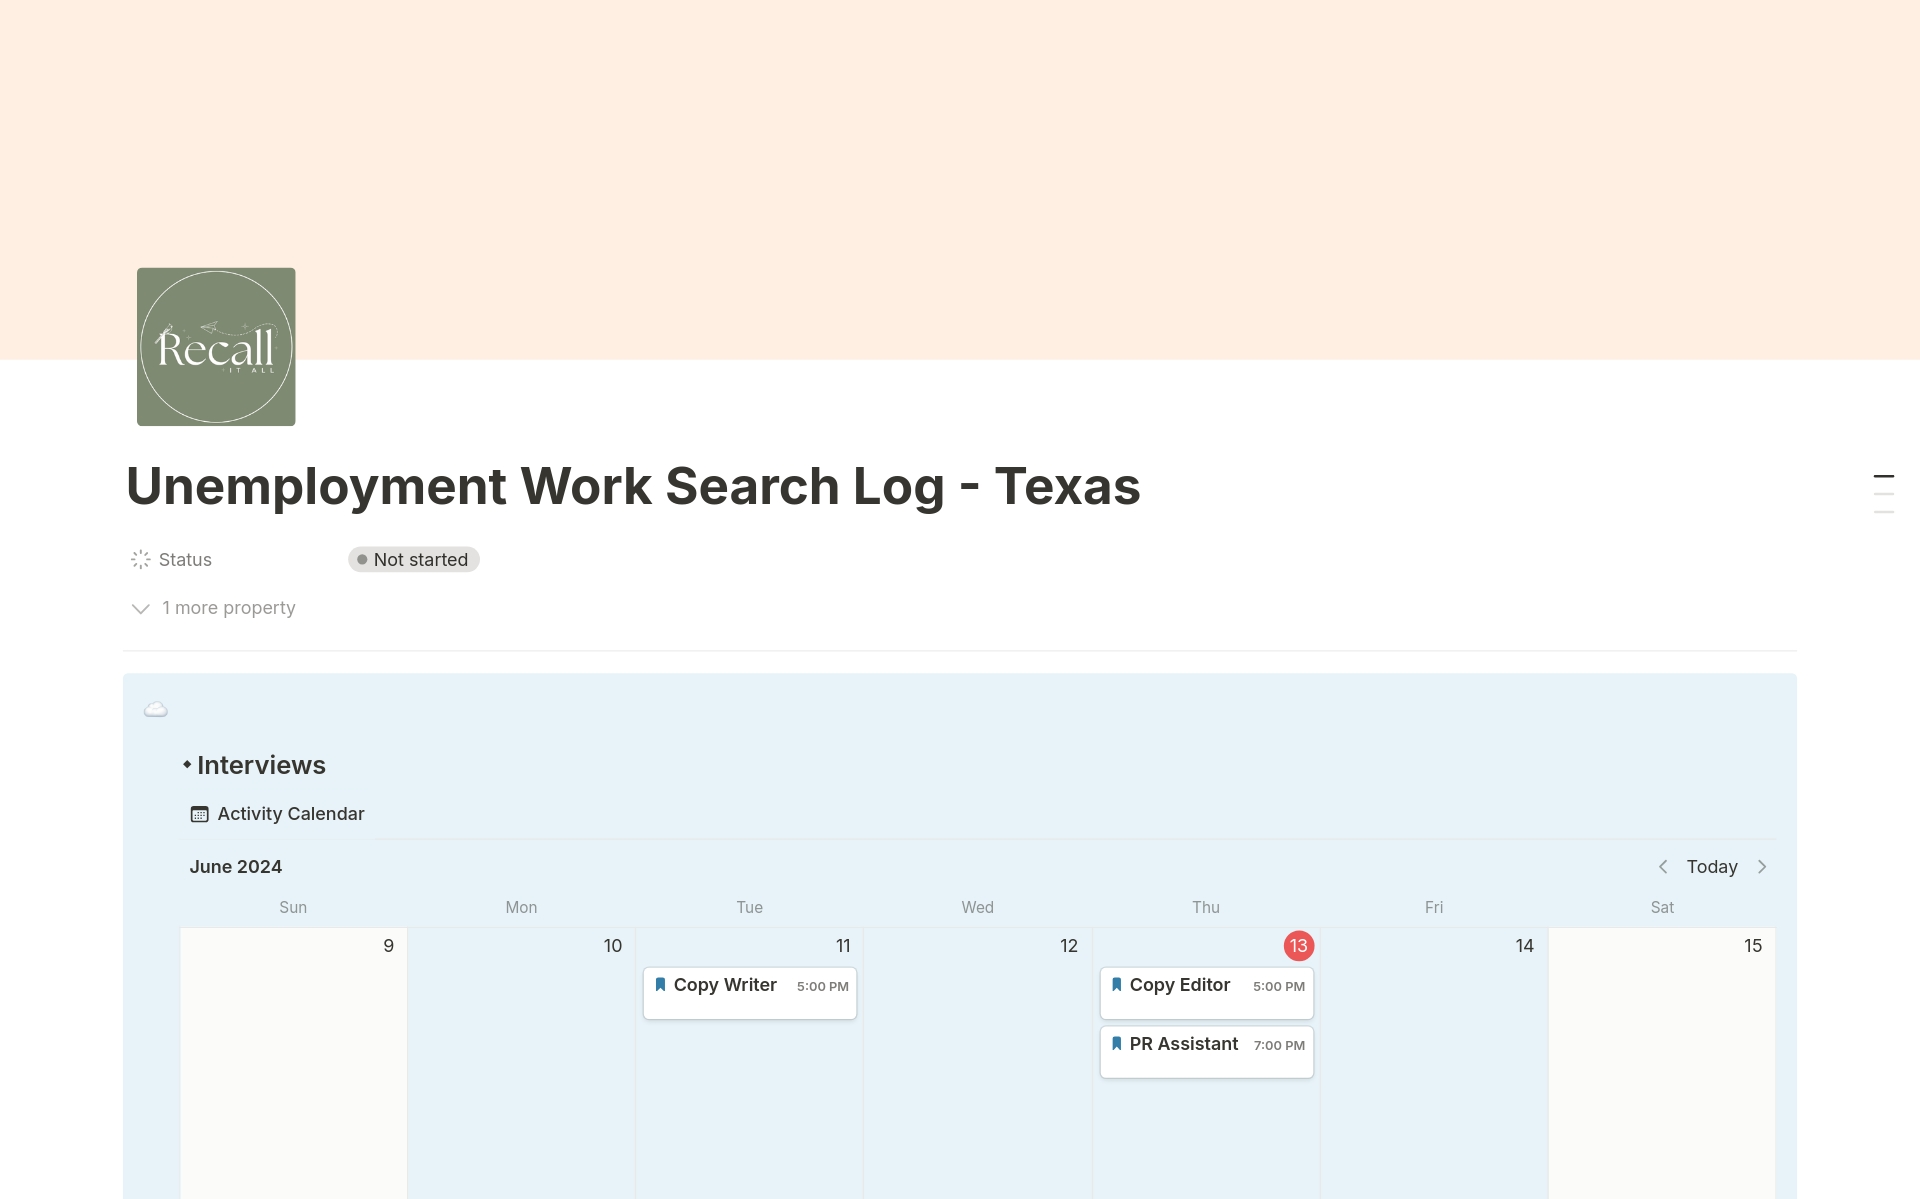 Uma prévia do modelo para Texas Unemployment Work Search Activity Log